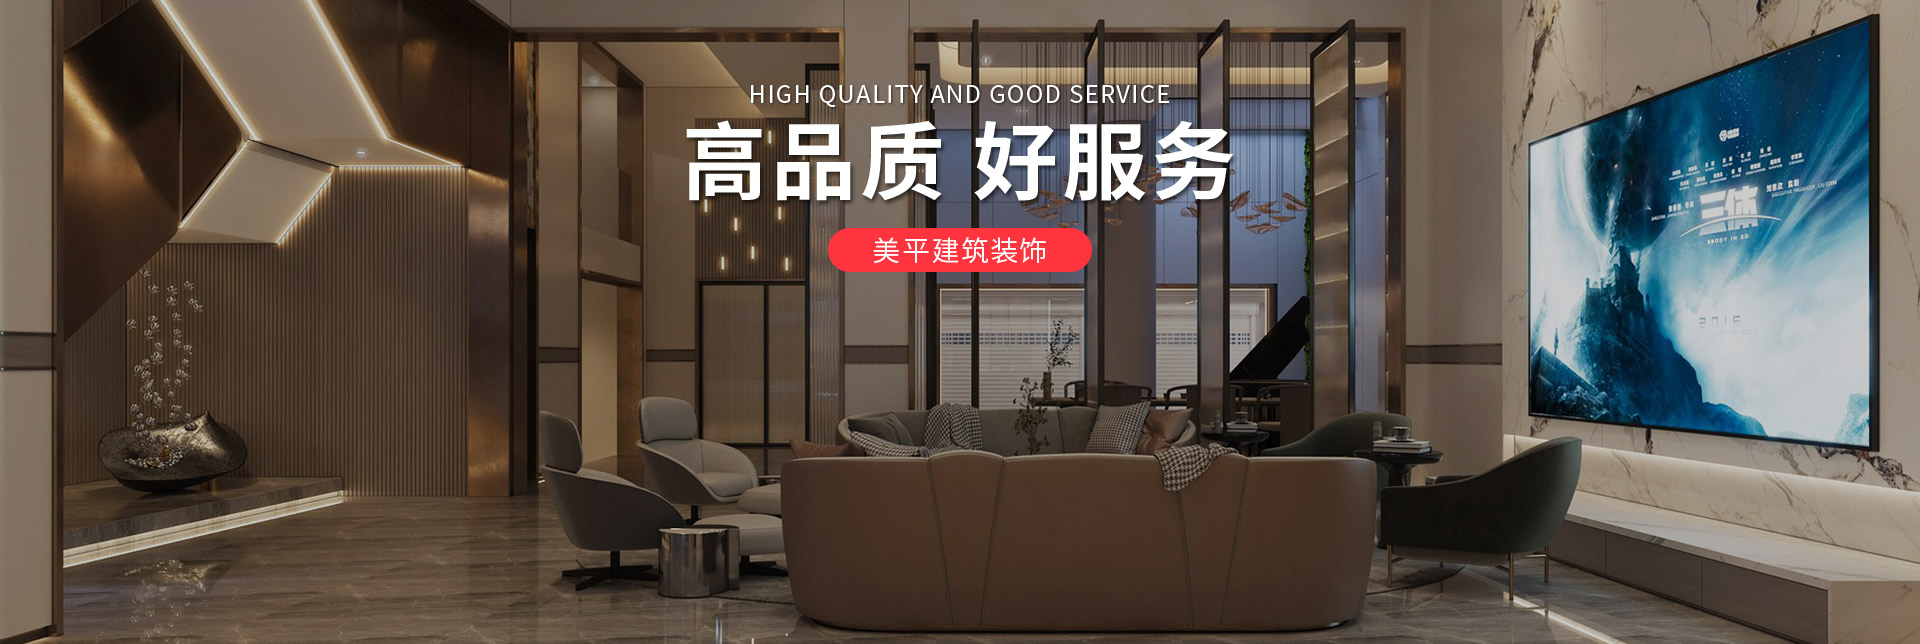 上海美平建筑装饰工程有限公司 